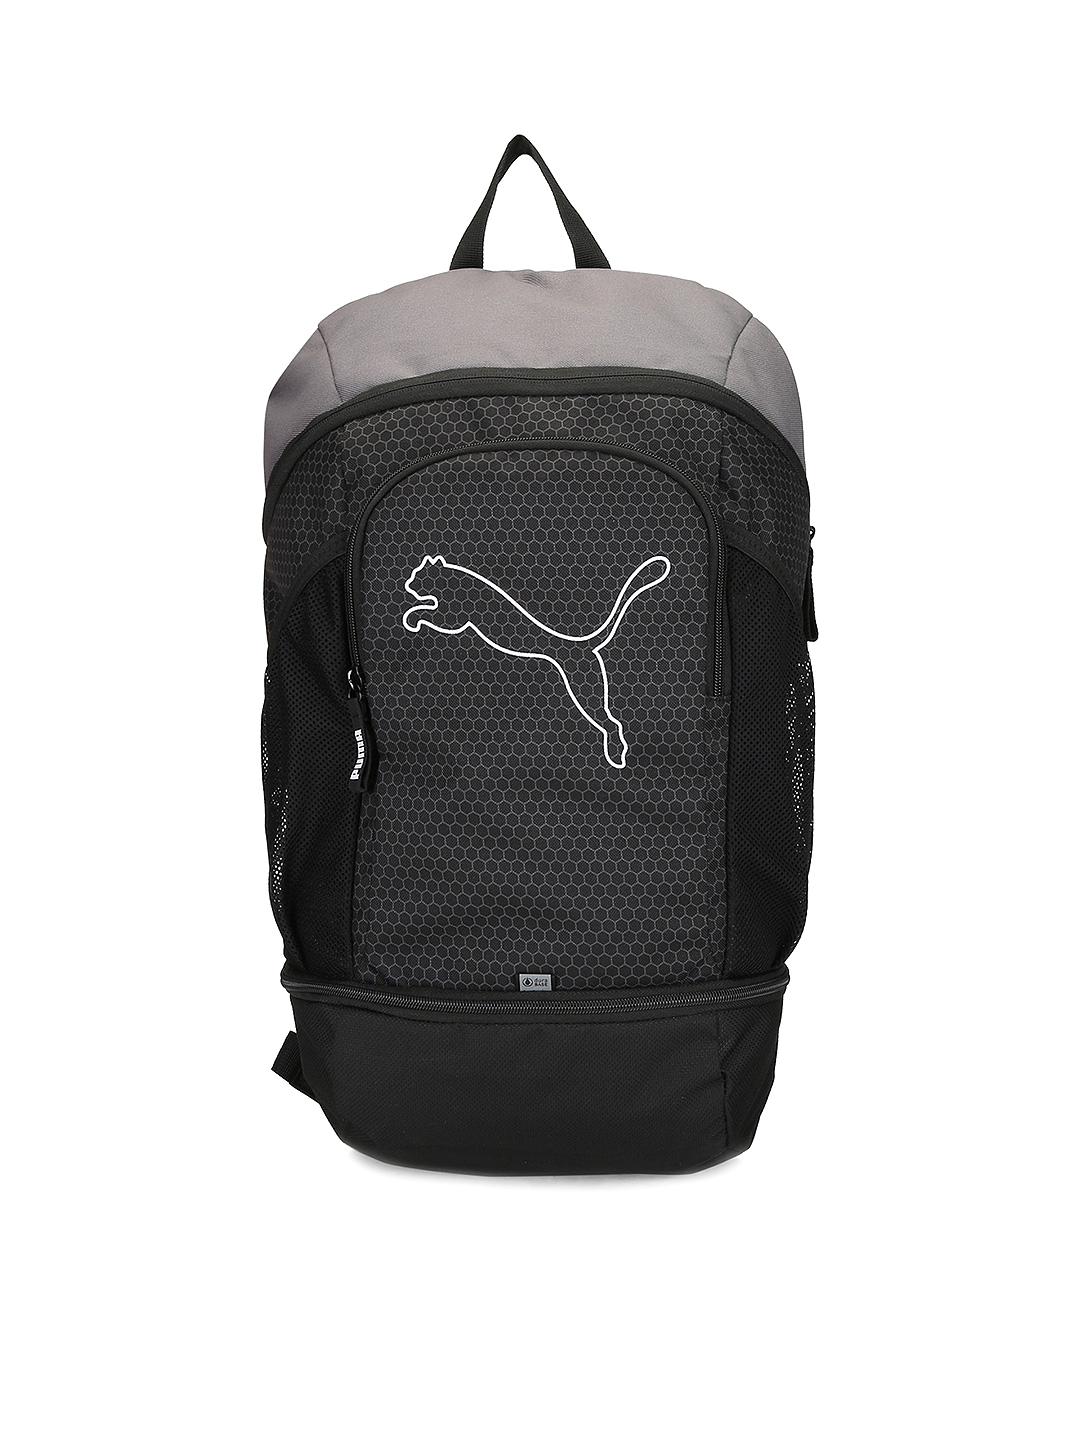 puma unisex black echo backpack